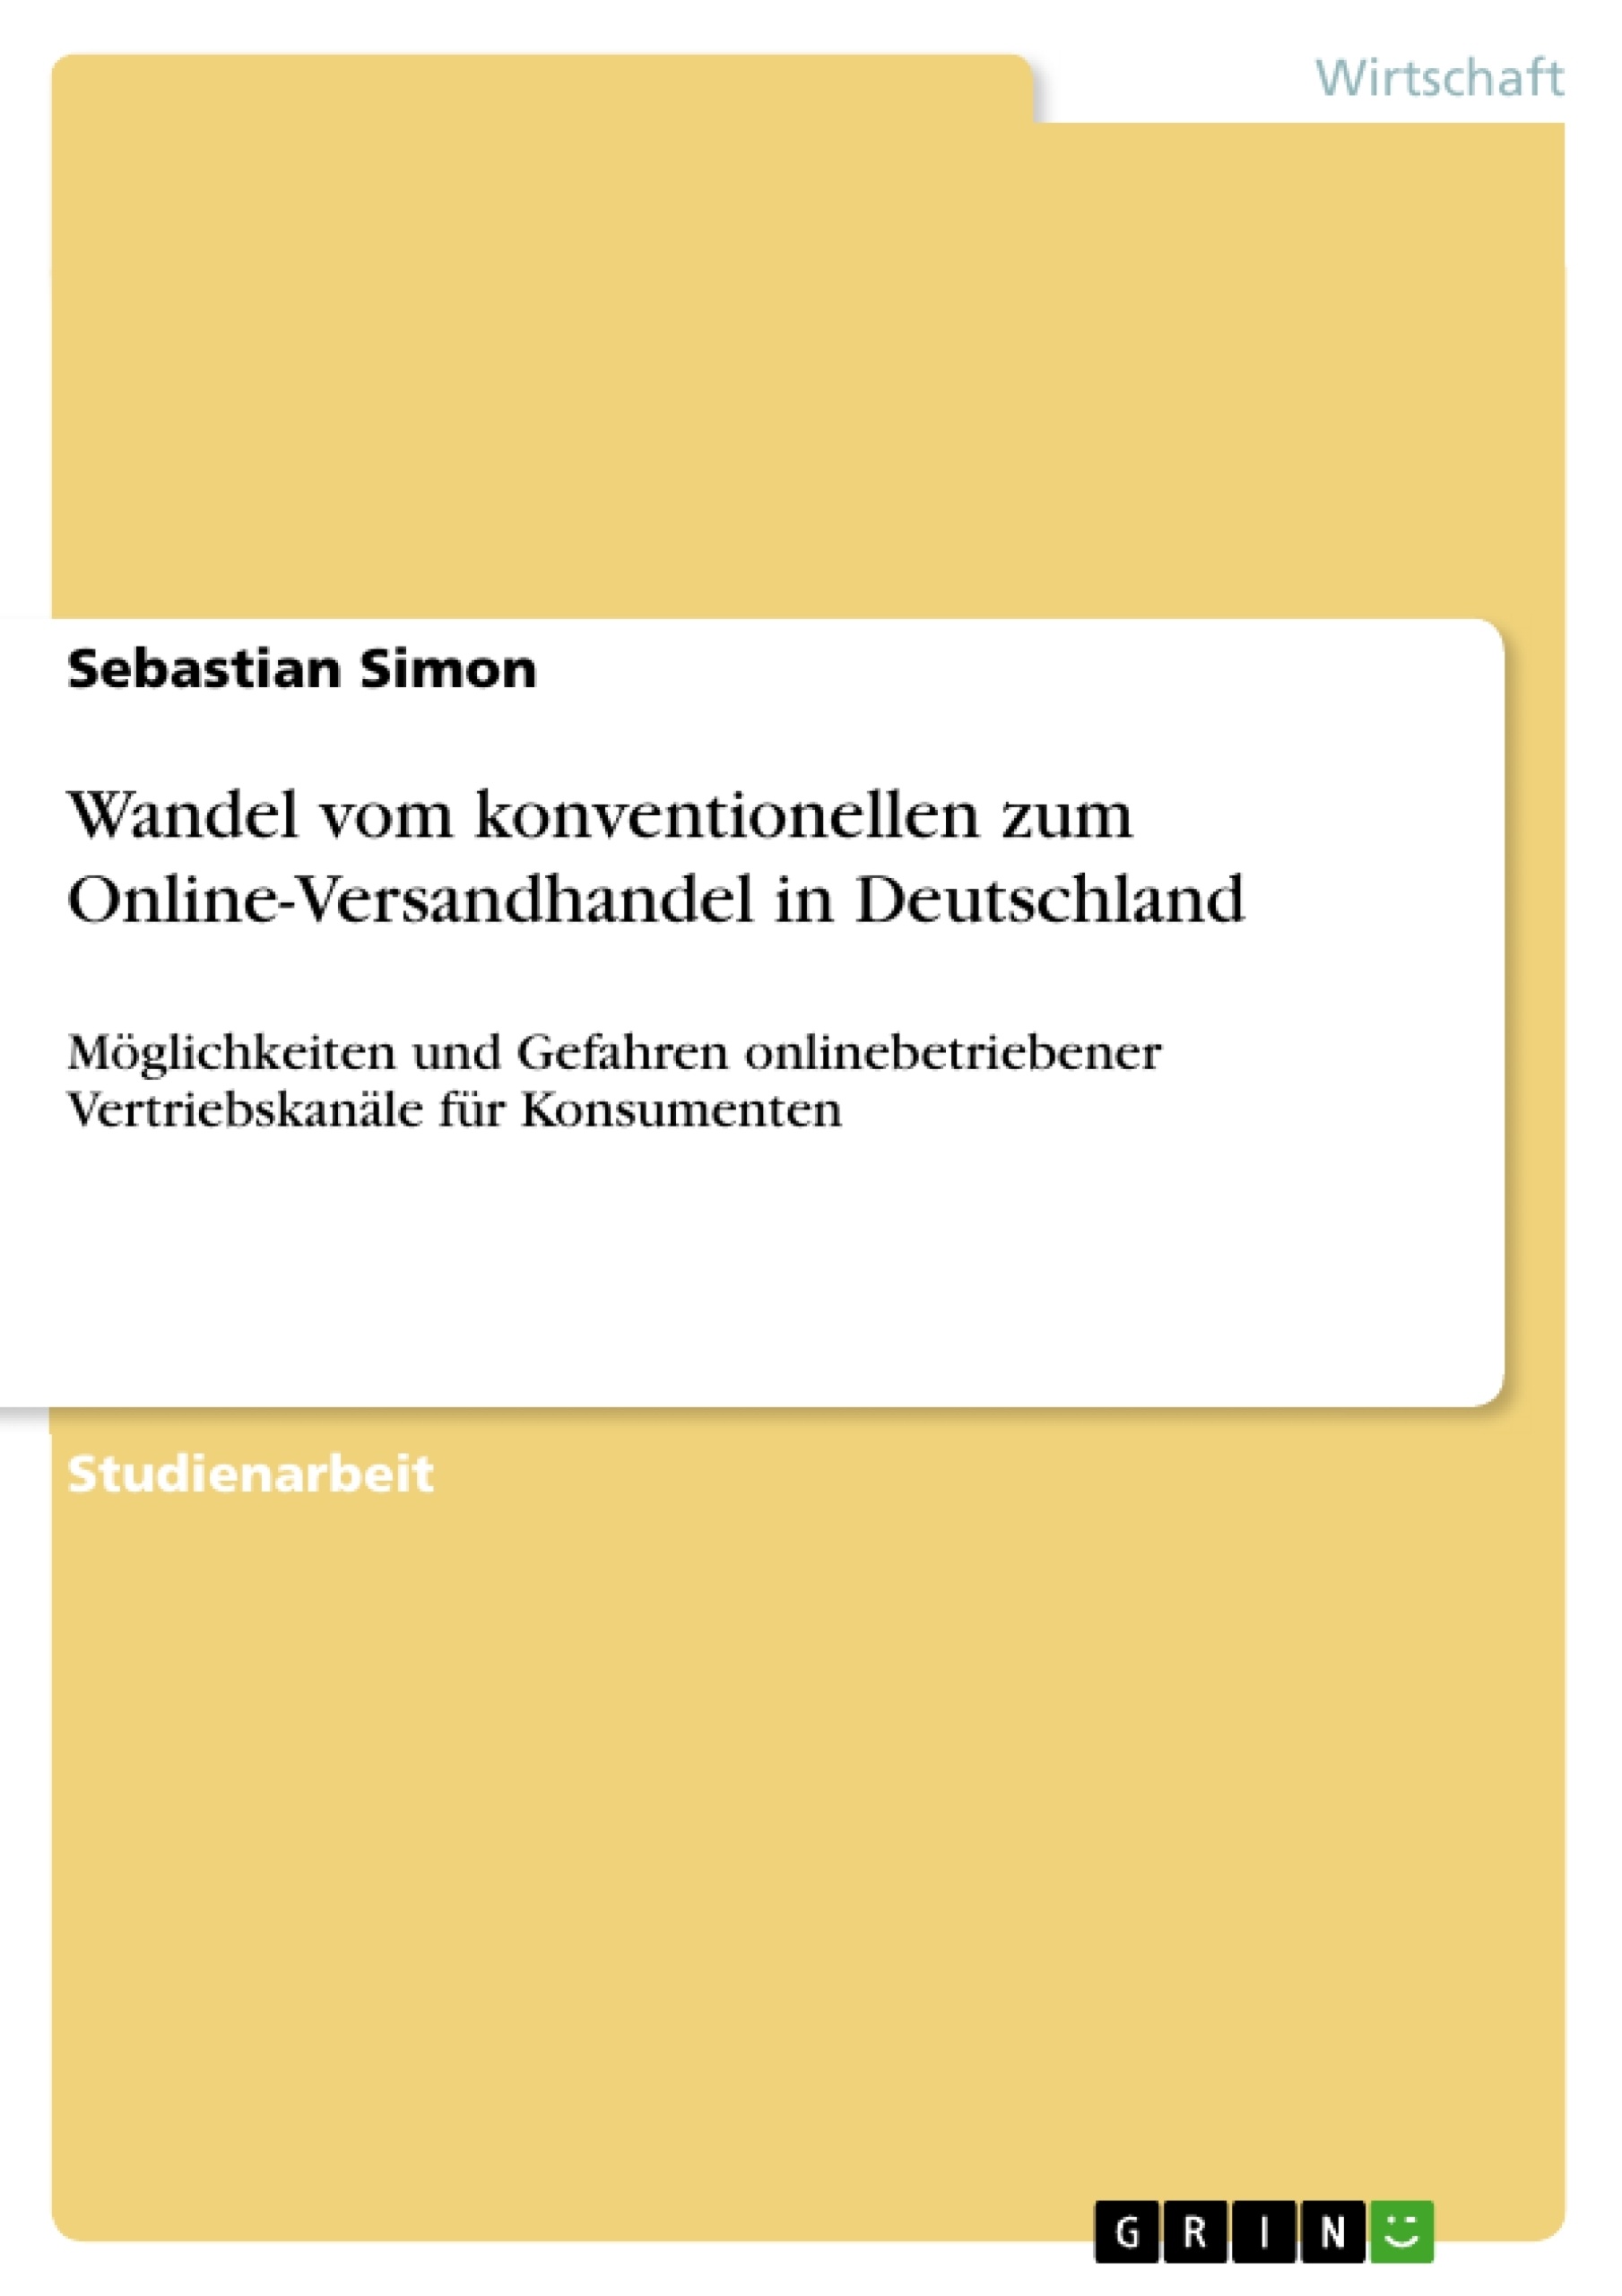 Titre: Wandel vom konventionellen zum Online-Versandhandel in Deutschland